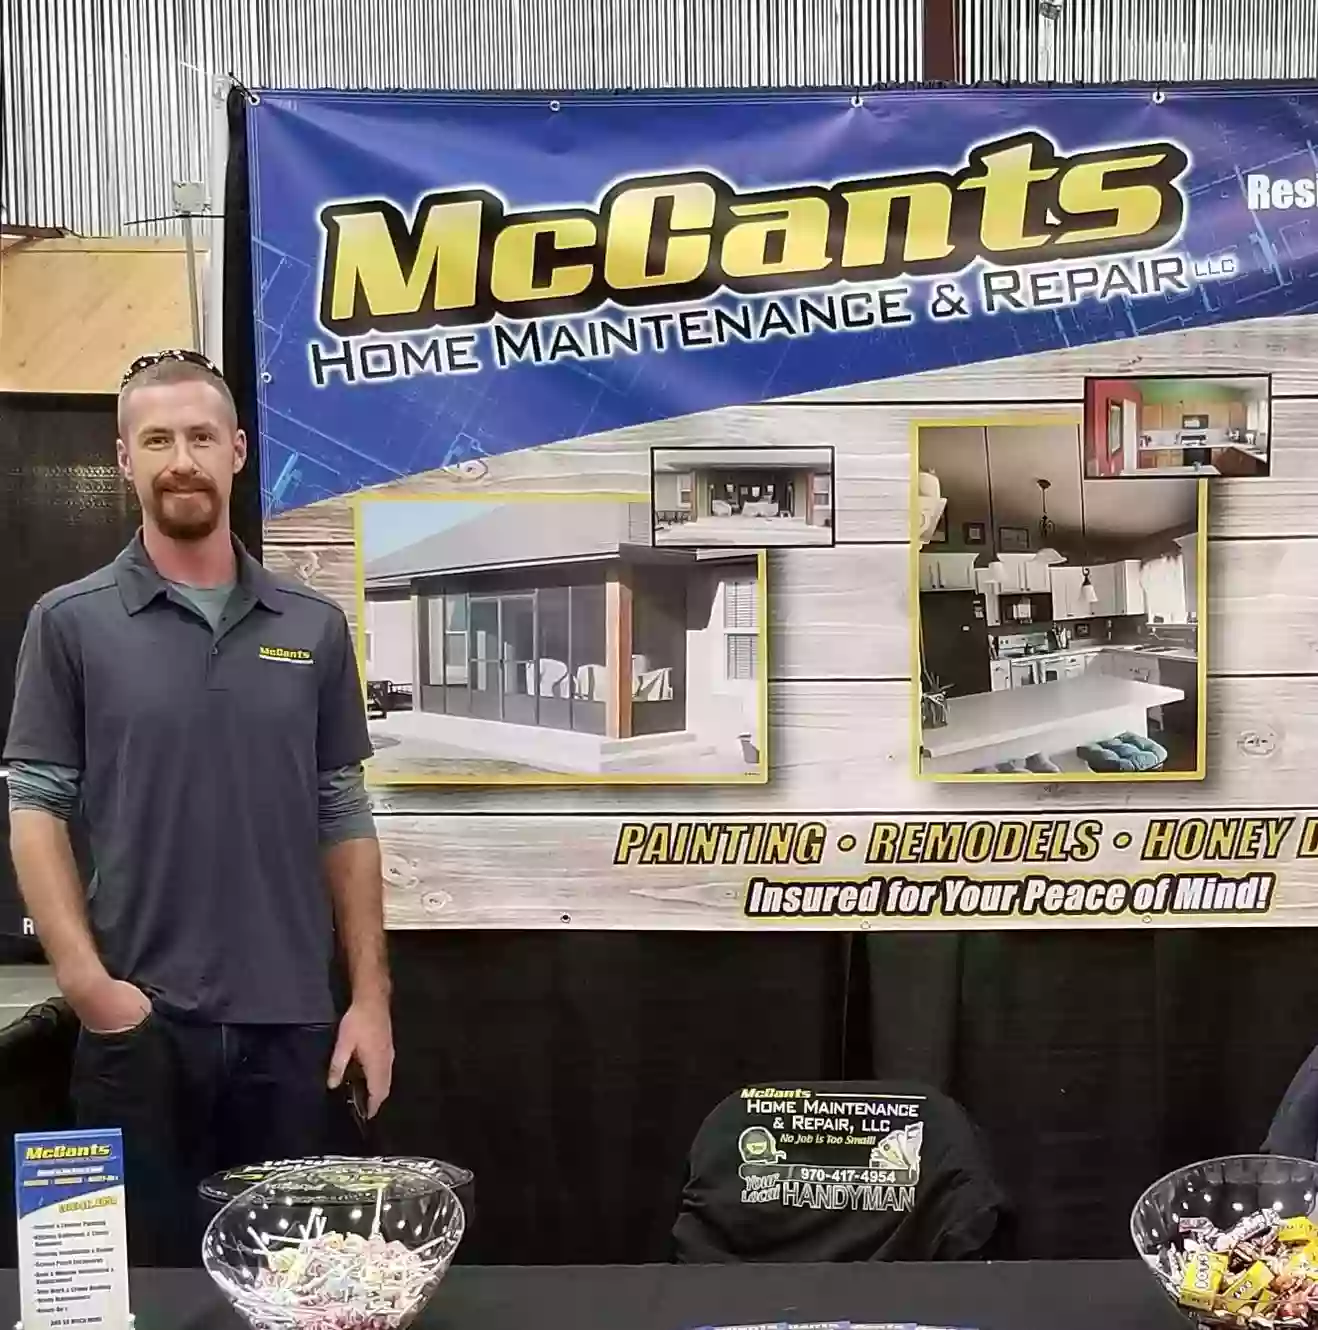 McCants Home Maintenance & Repair